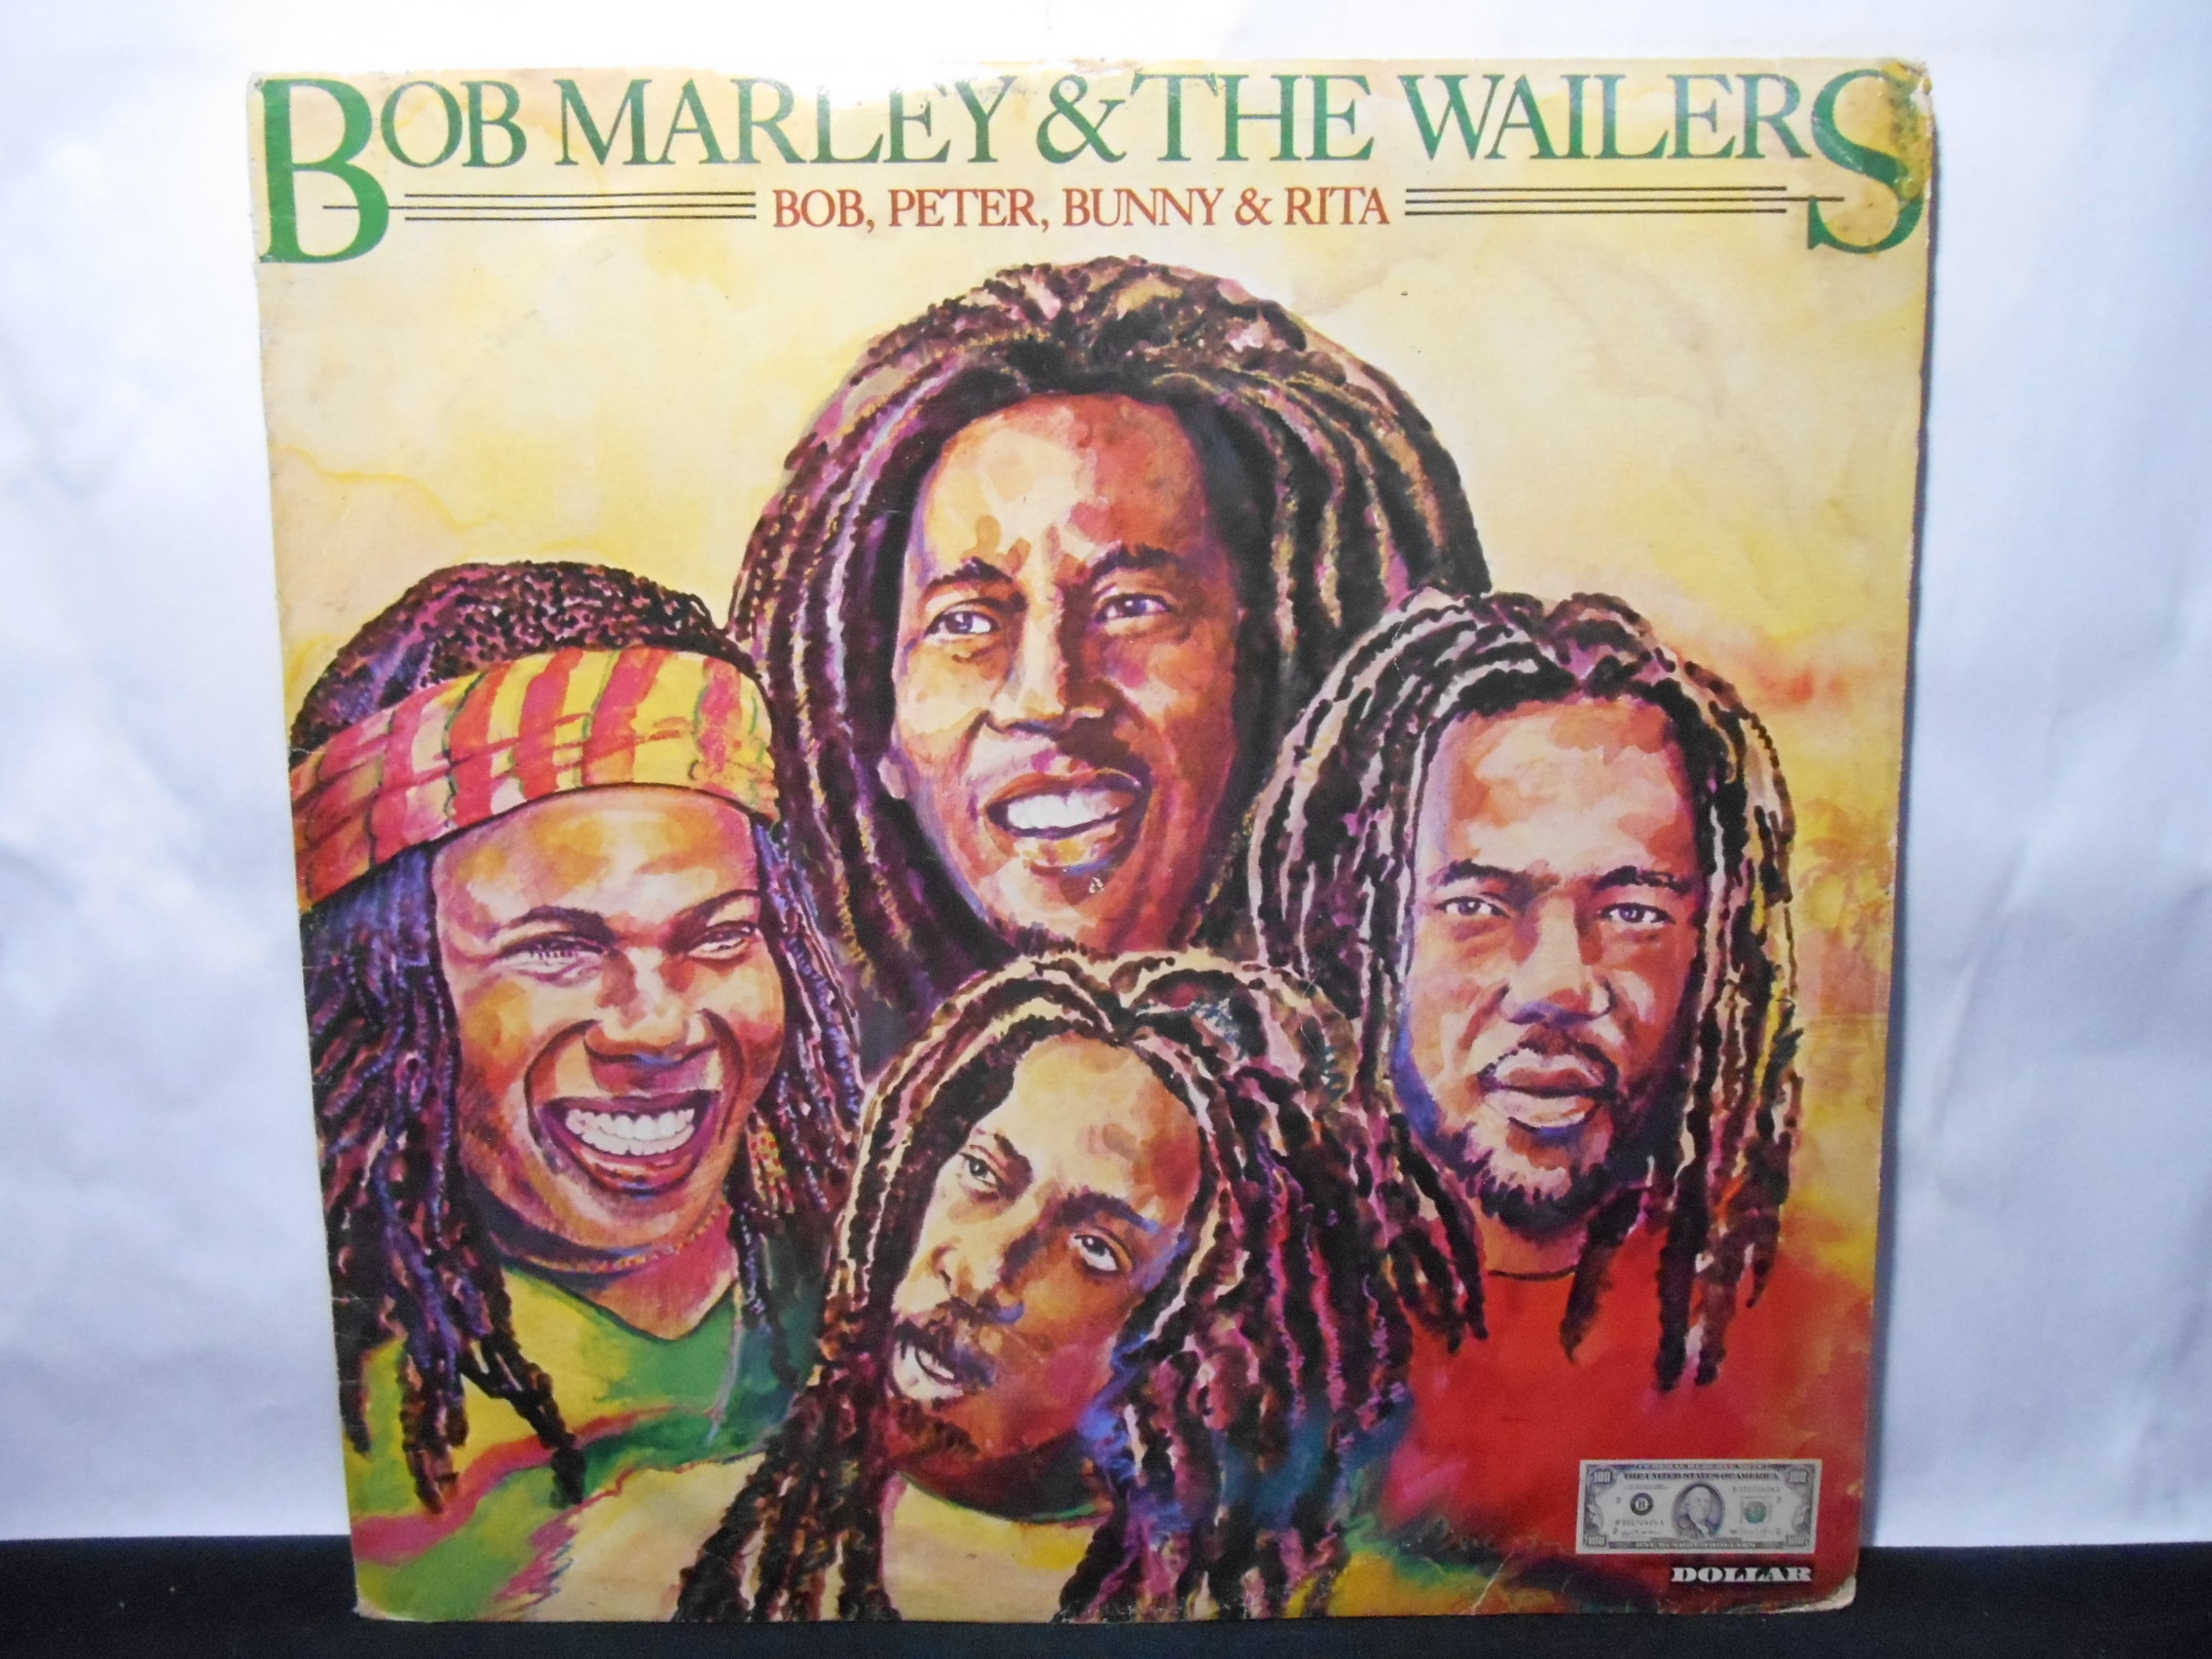 Vinil - Bob Marley and the Wailers - Bob Peter Bunny and Rita